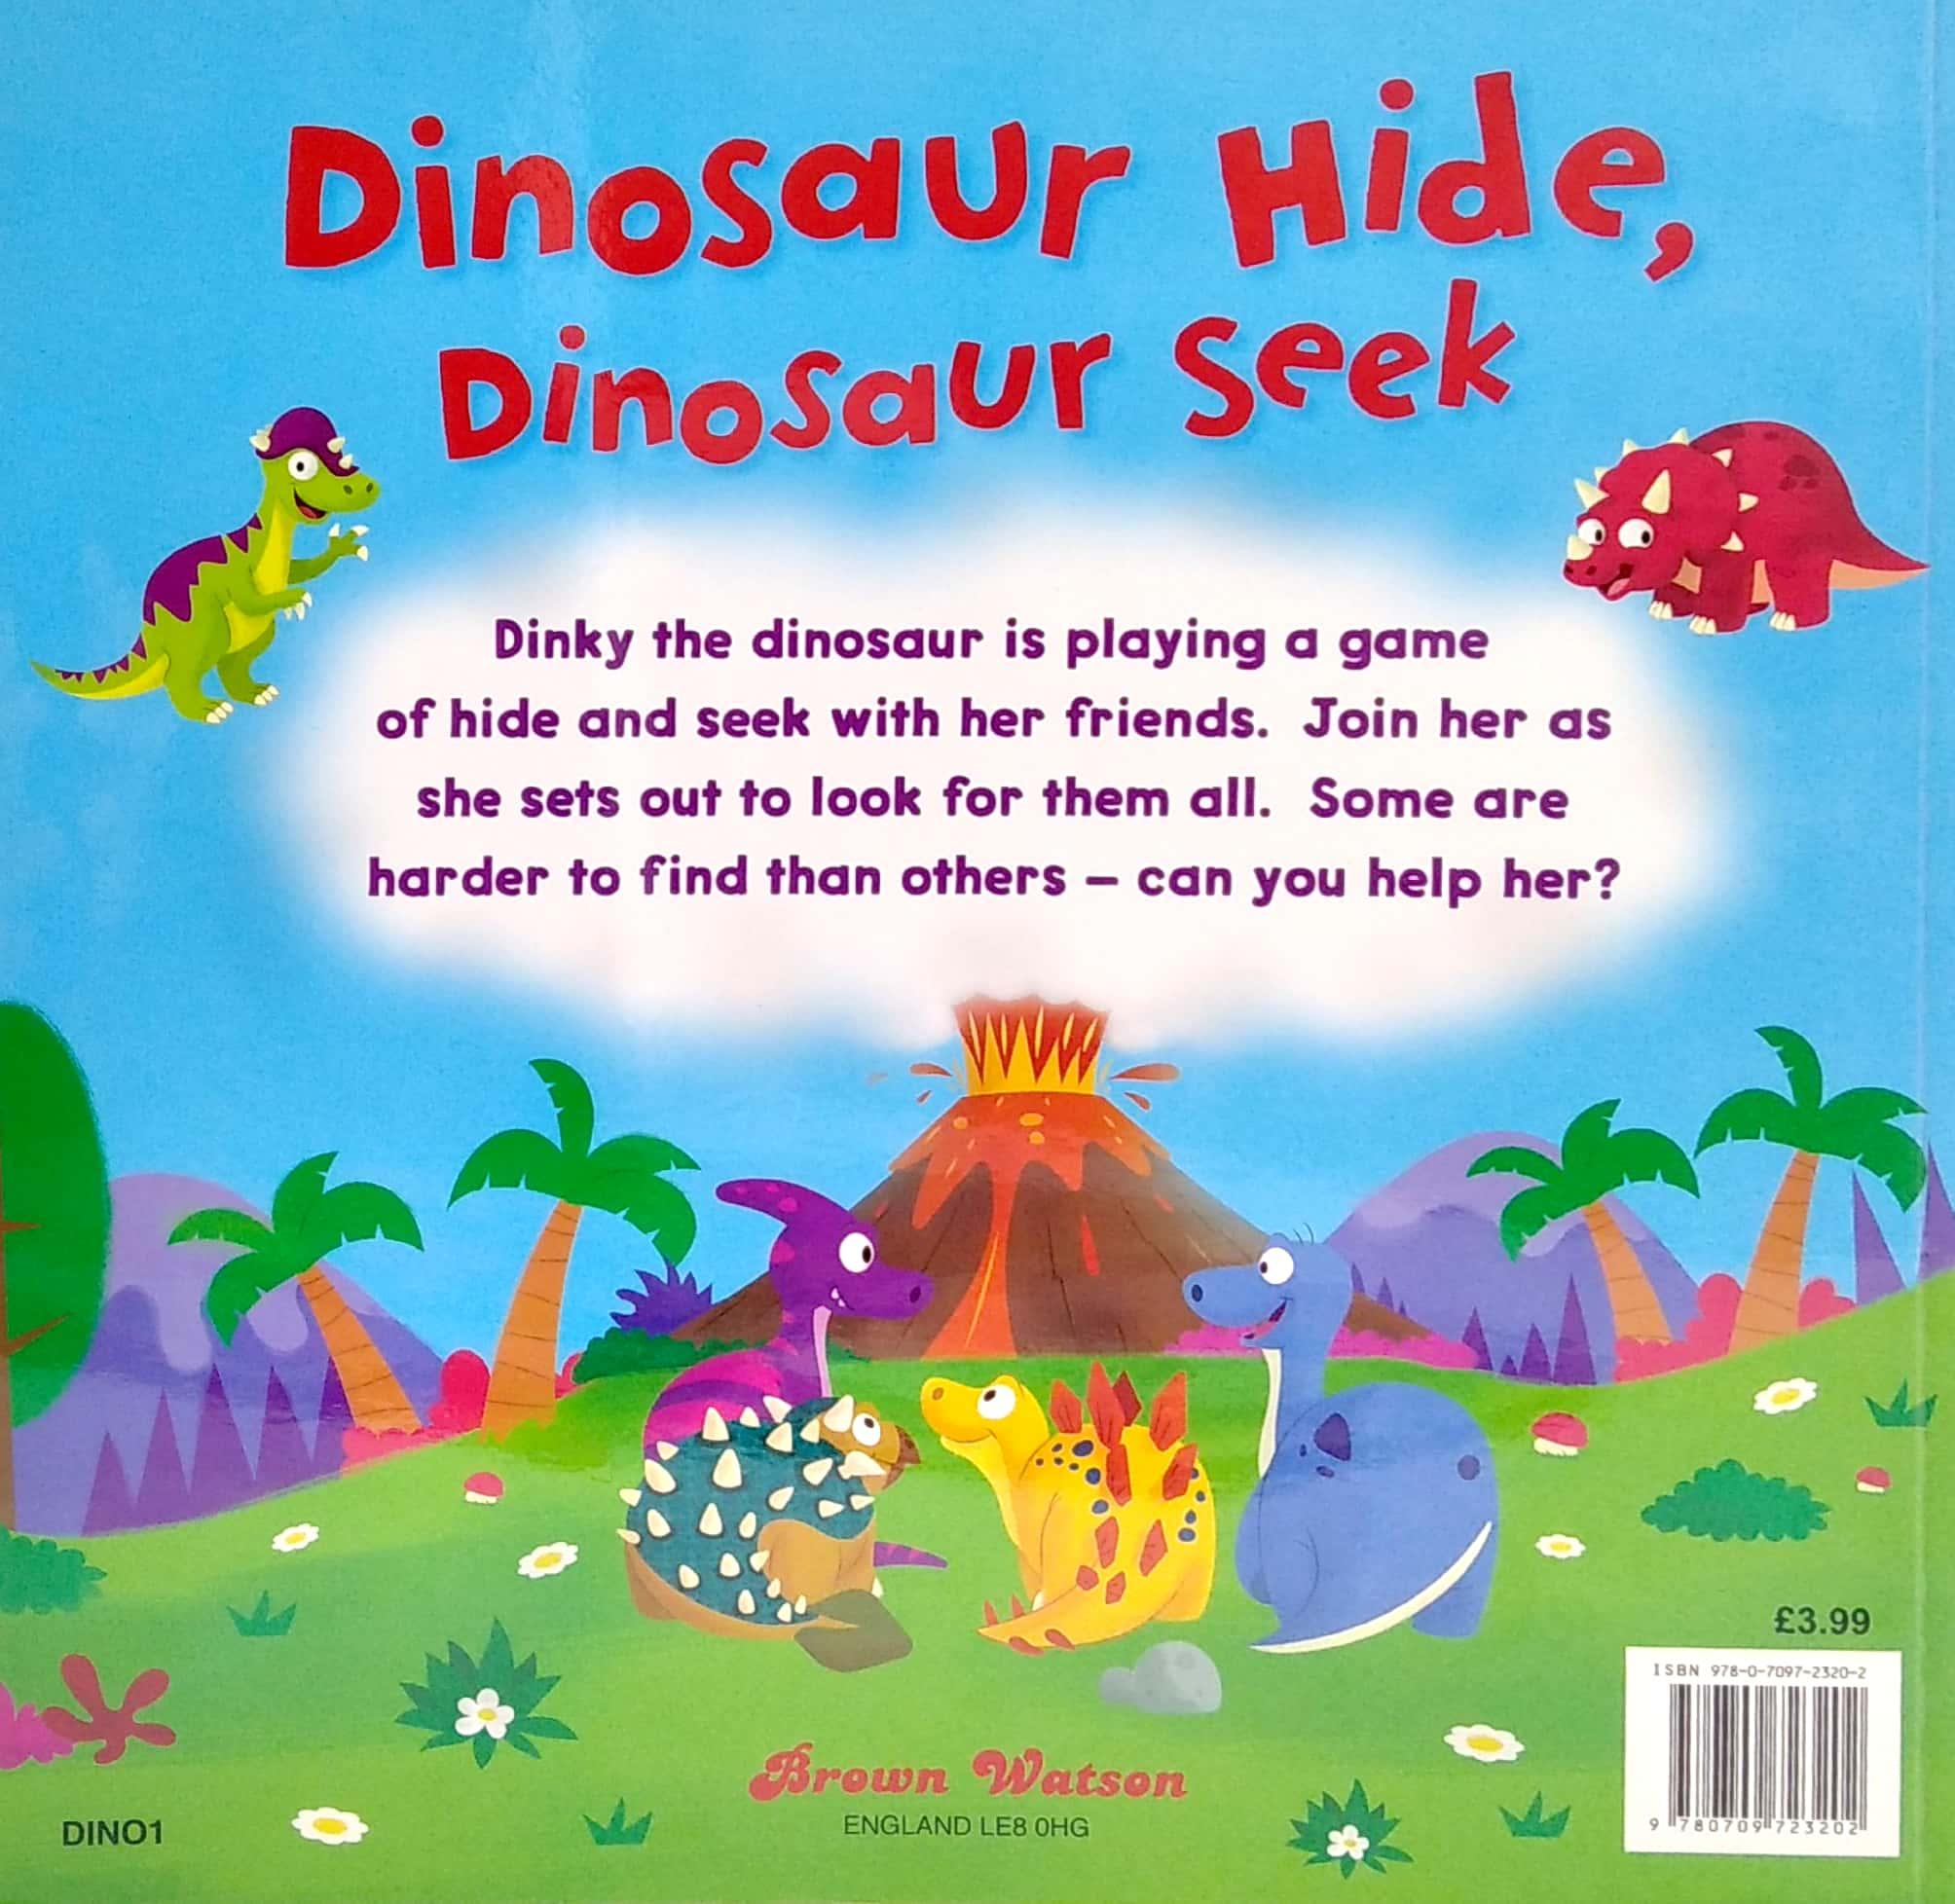 Brown Watson 'Dinosaur Hide, Dinosaur Seek' Picture Book